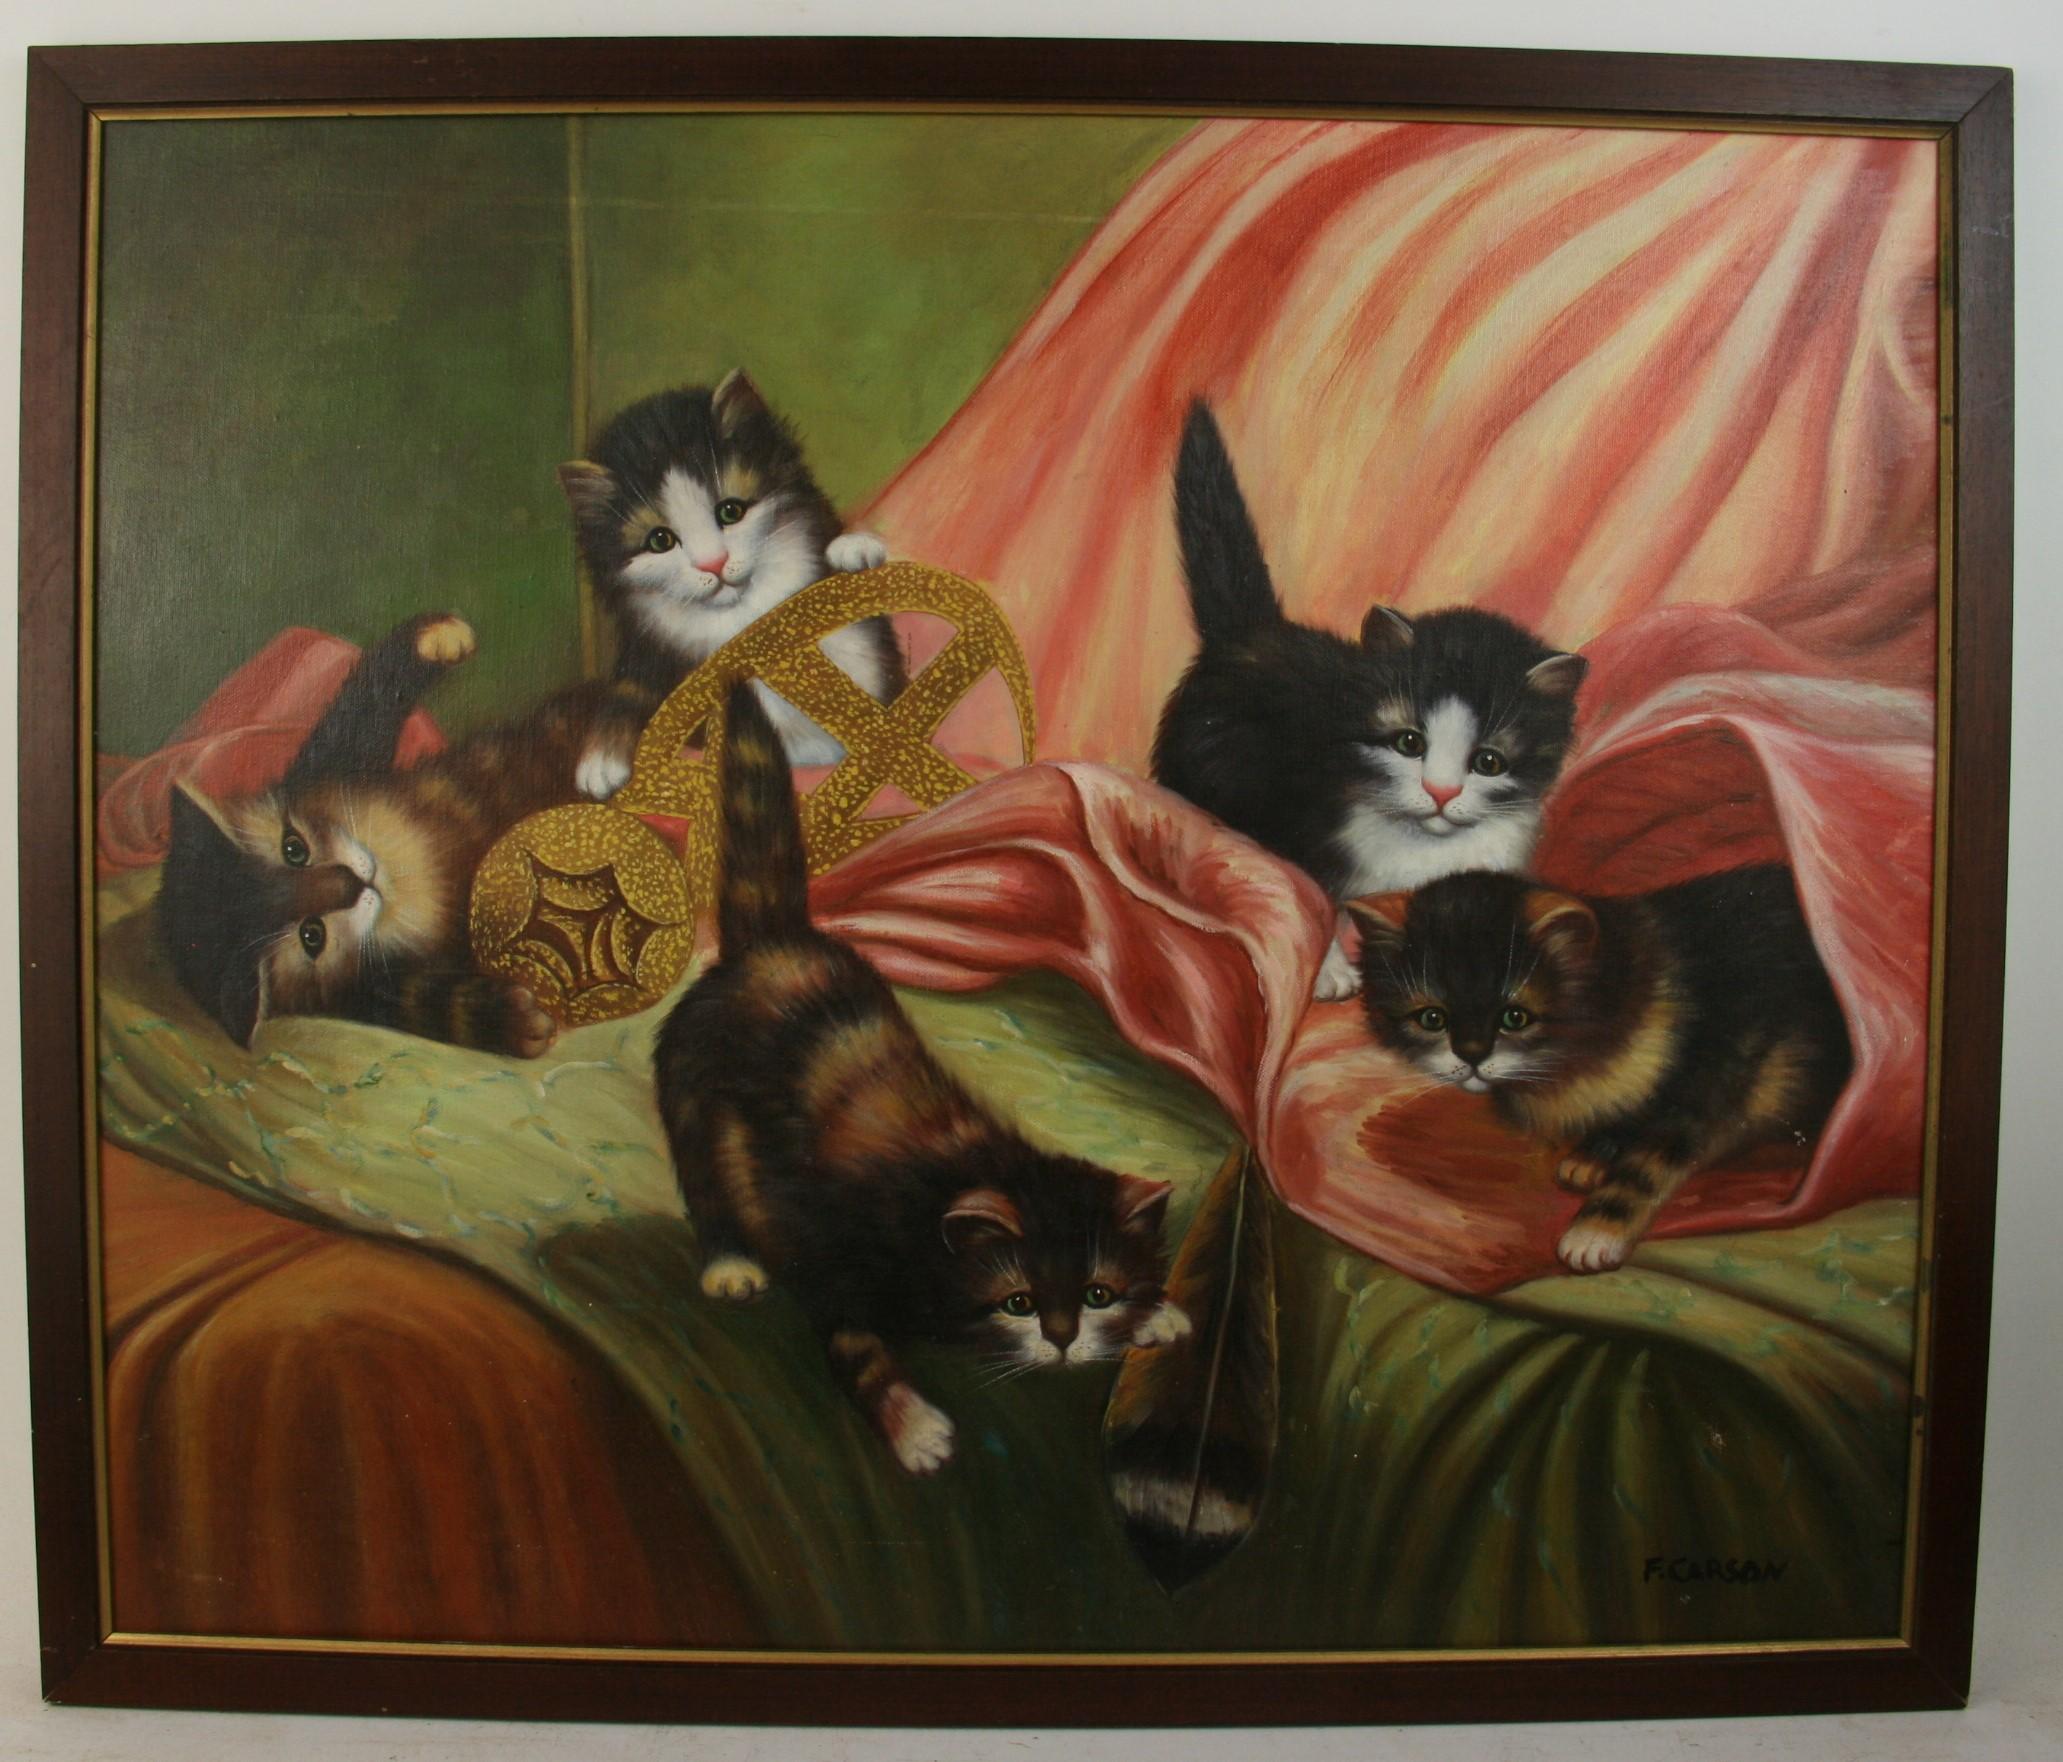 3745 Huile sur toile représentant une portée de chatons gambadant sur un canapé
Dans un cadre en bois noir
Signé F. Carsons